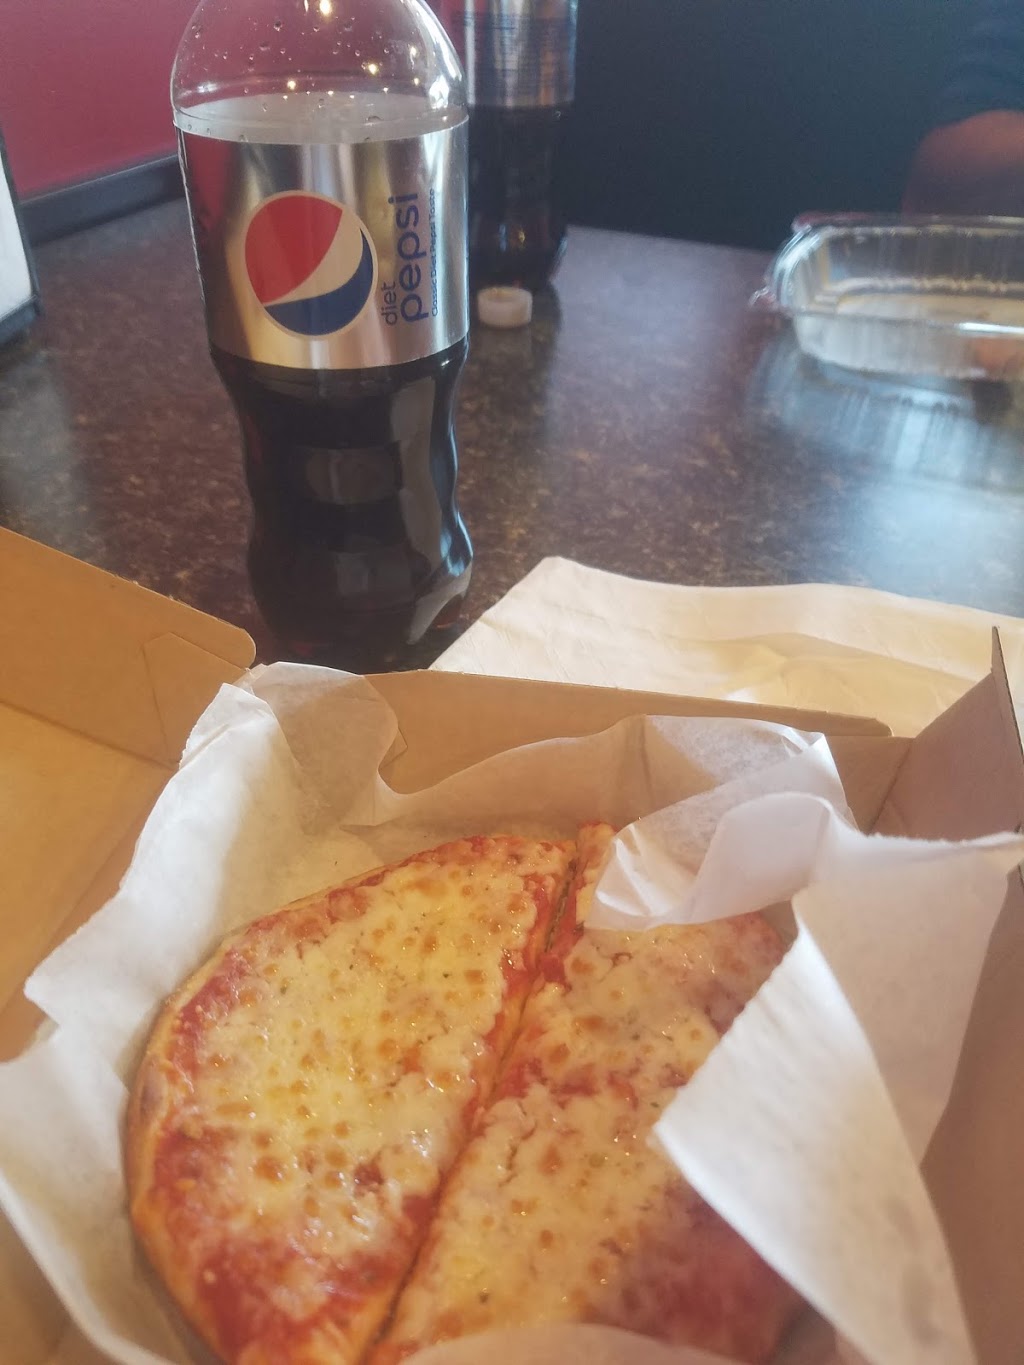 Foxs Pizza Den | 616 S Pike Rd, Sarver, PA 16055, USA | Phone: (724) 295-3222